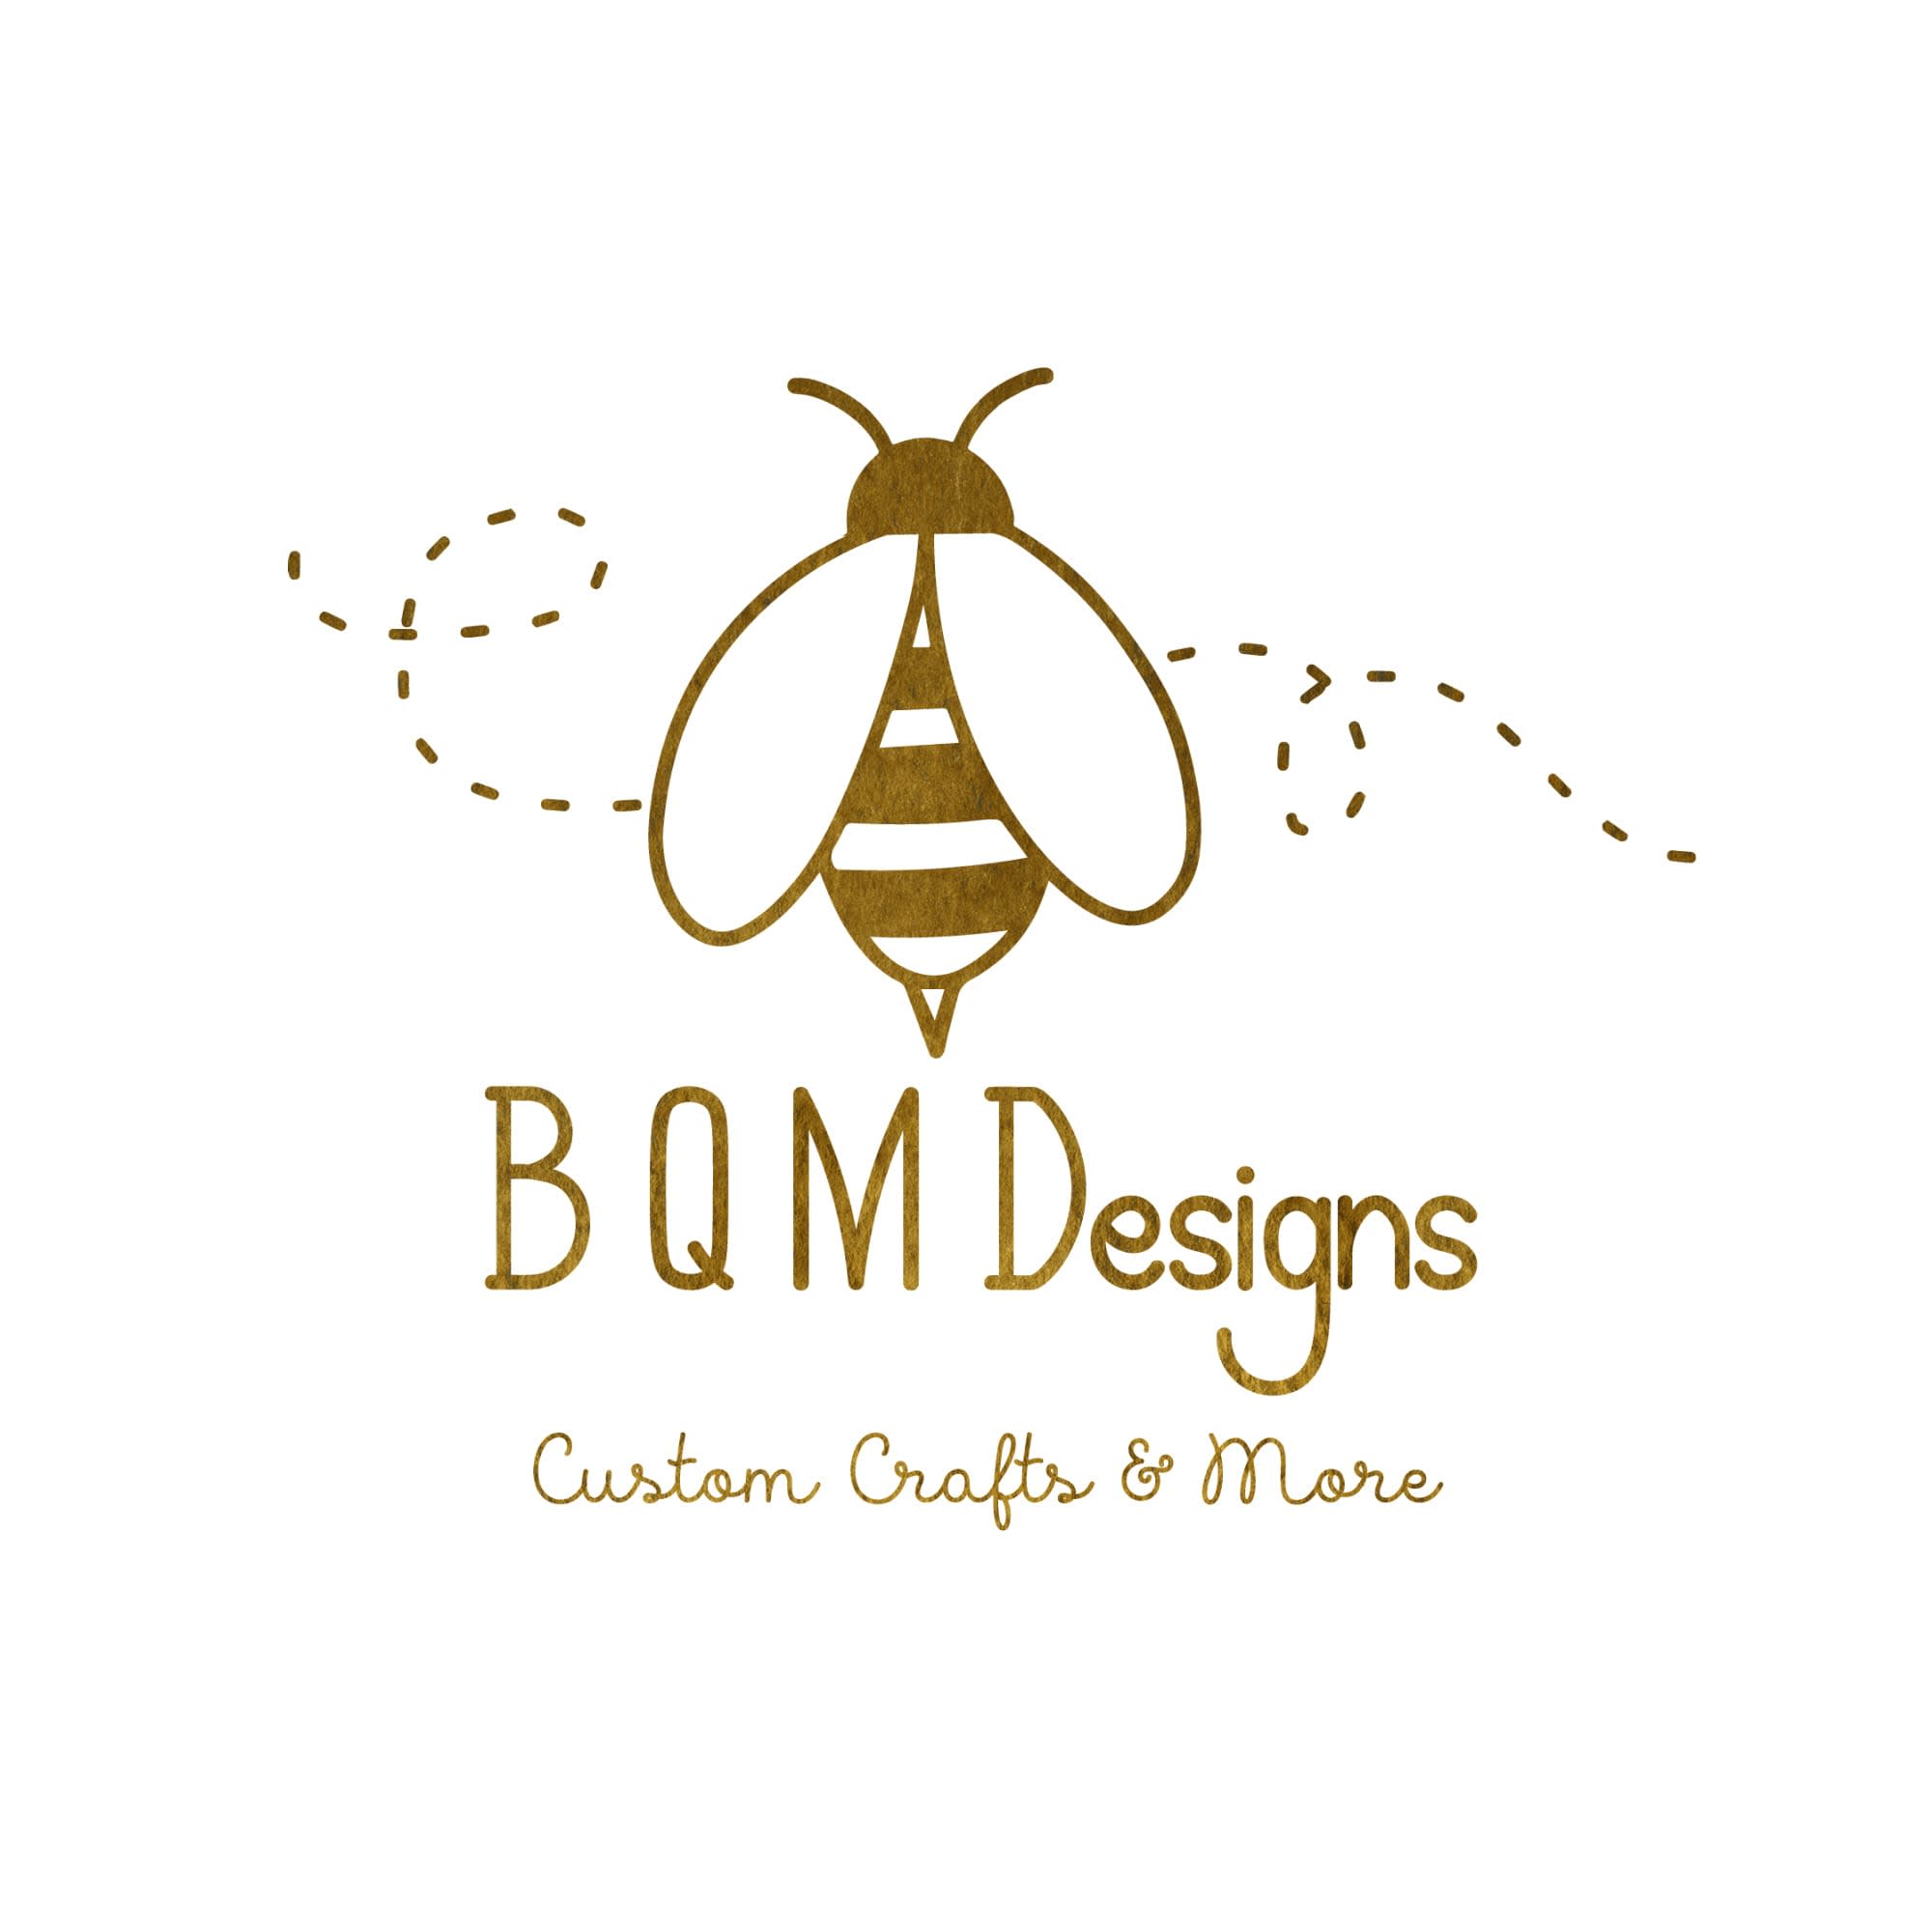 BQM Designs